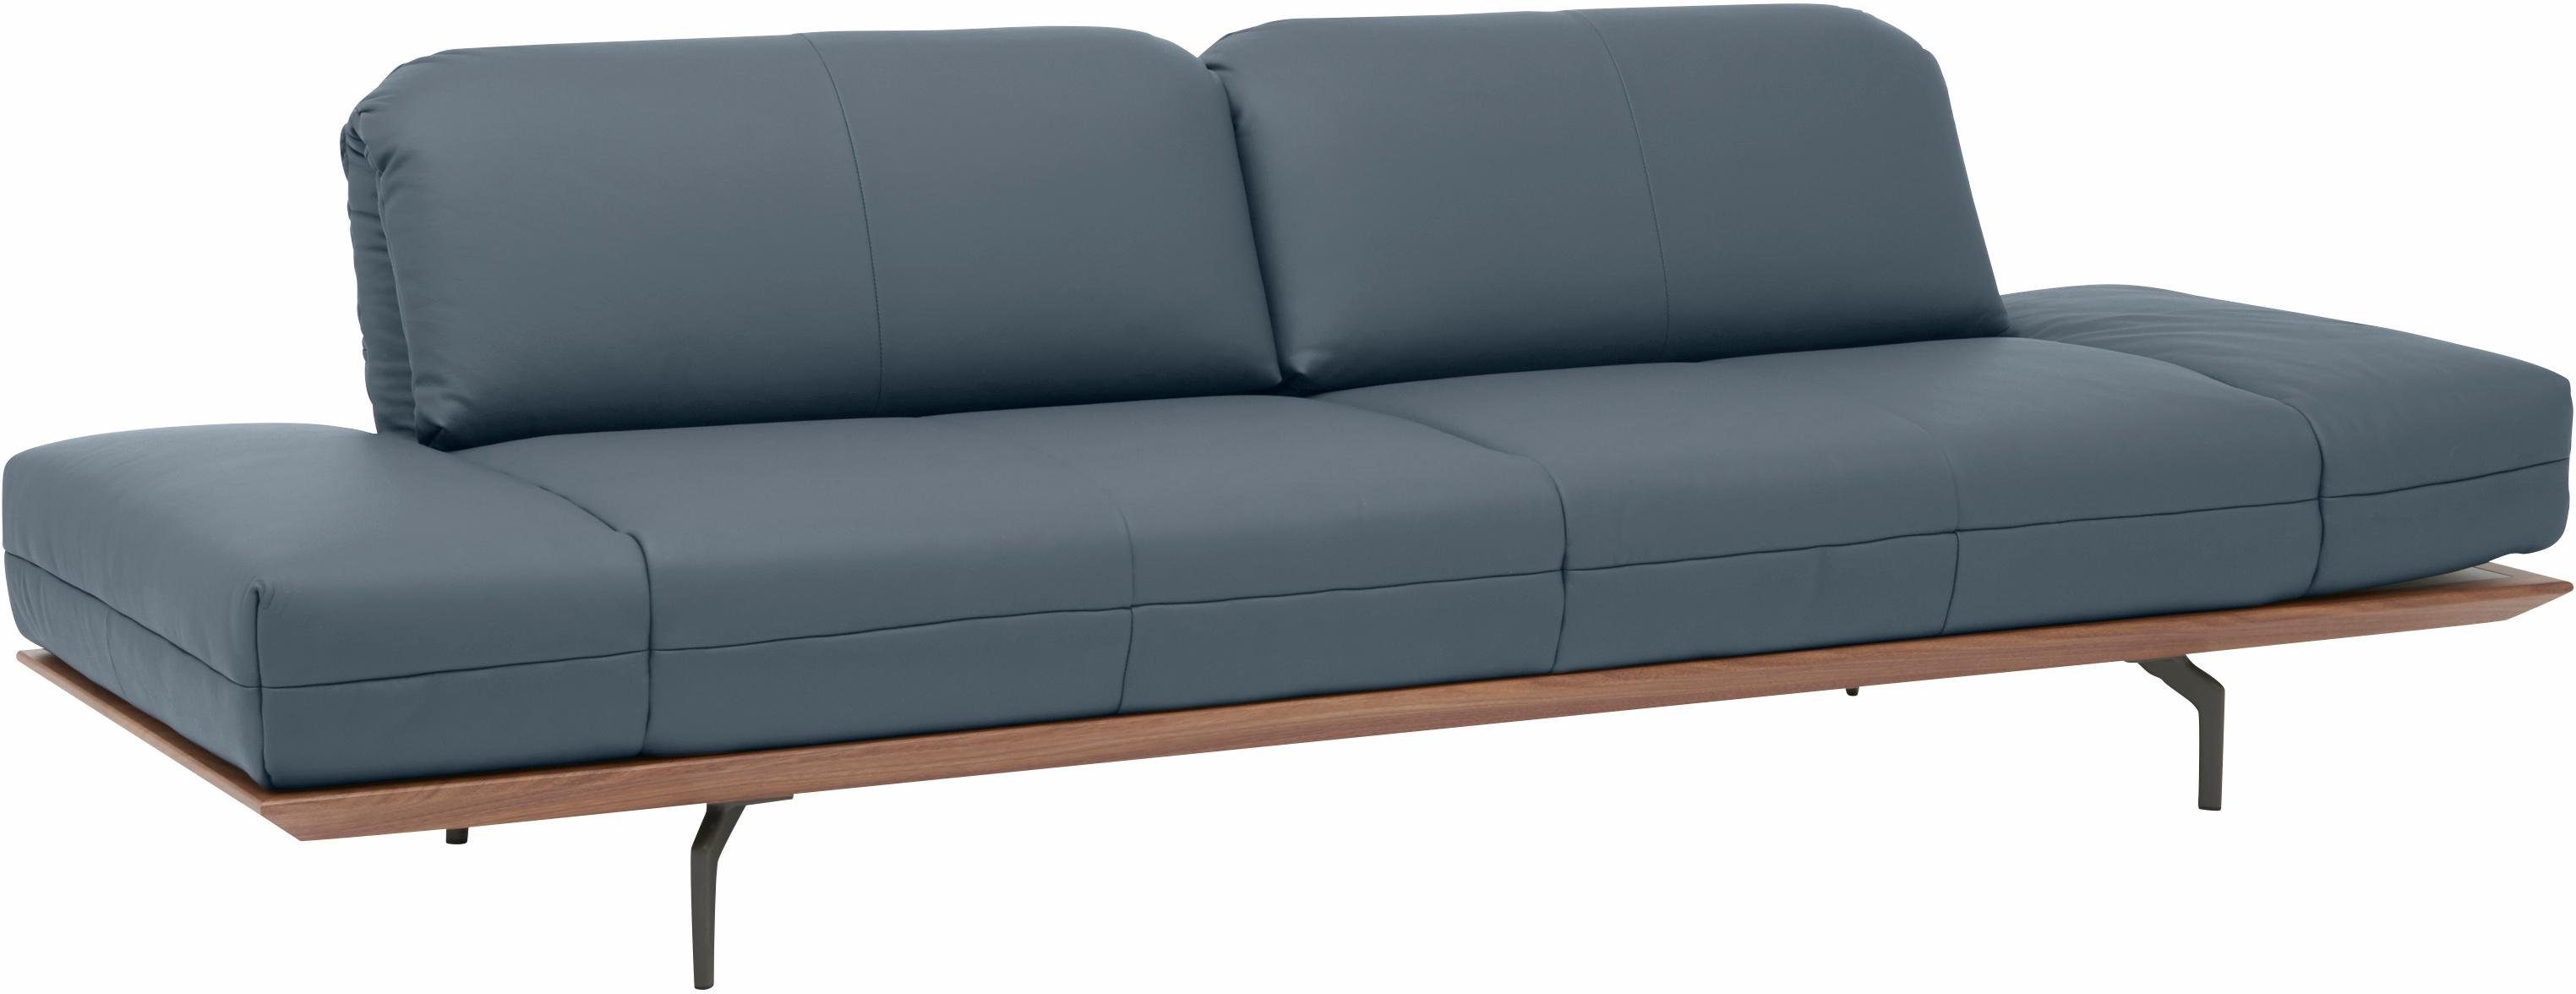 2 sofa Breite Eiche Natur Qualitäten, Holzrahmen 4-Sitzer Nußbaum, oder in hs.420, in 252 hülsta cm